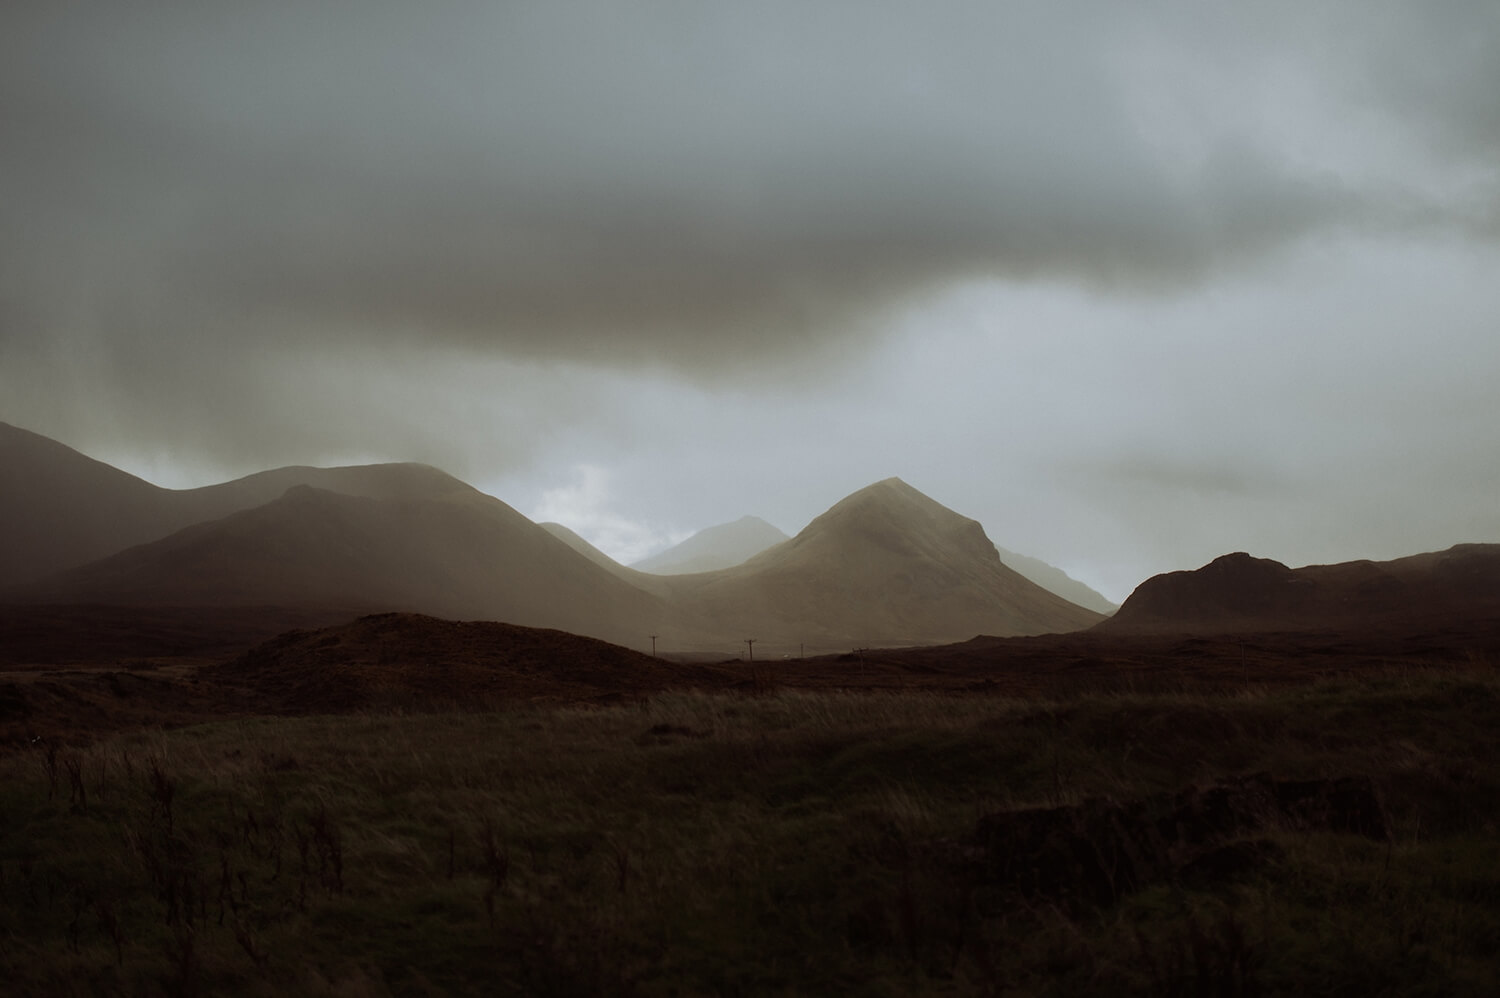 The mountains of Scotland.